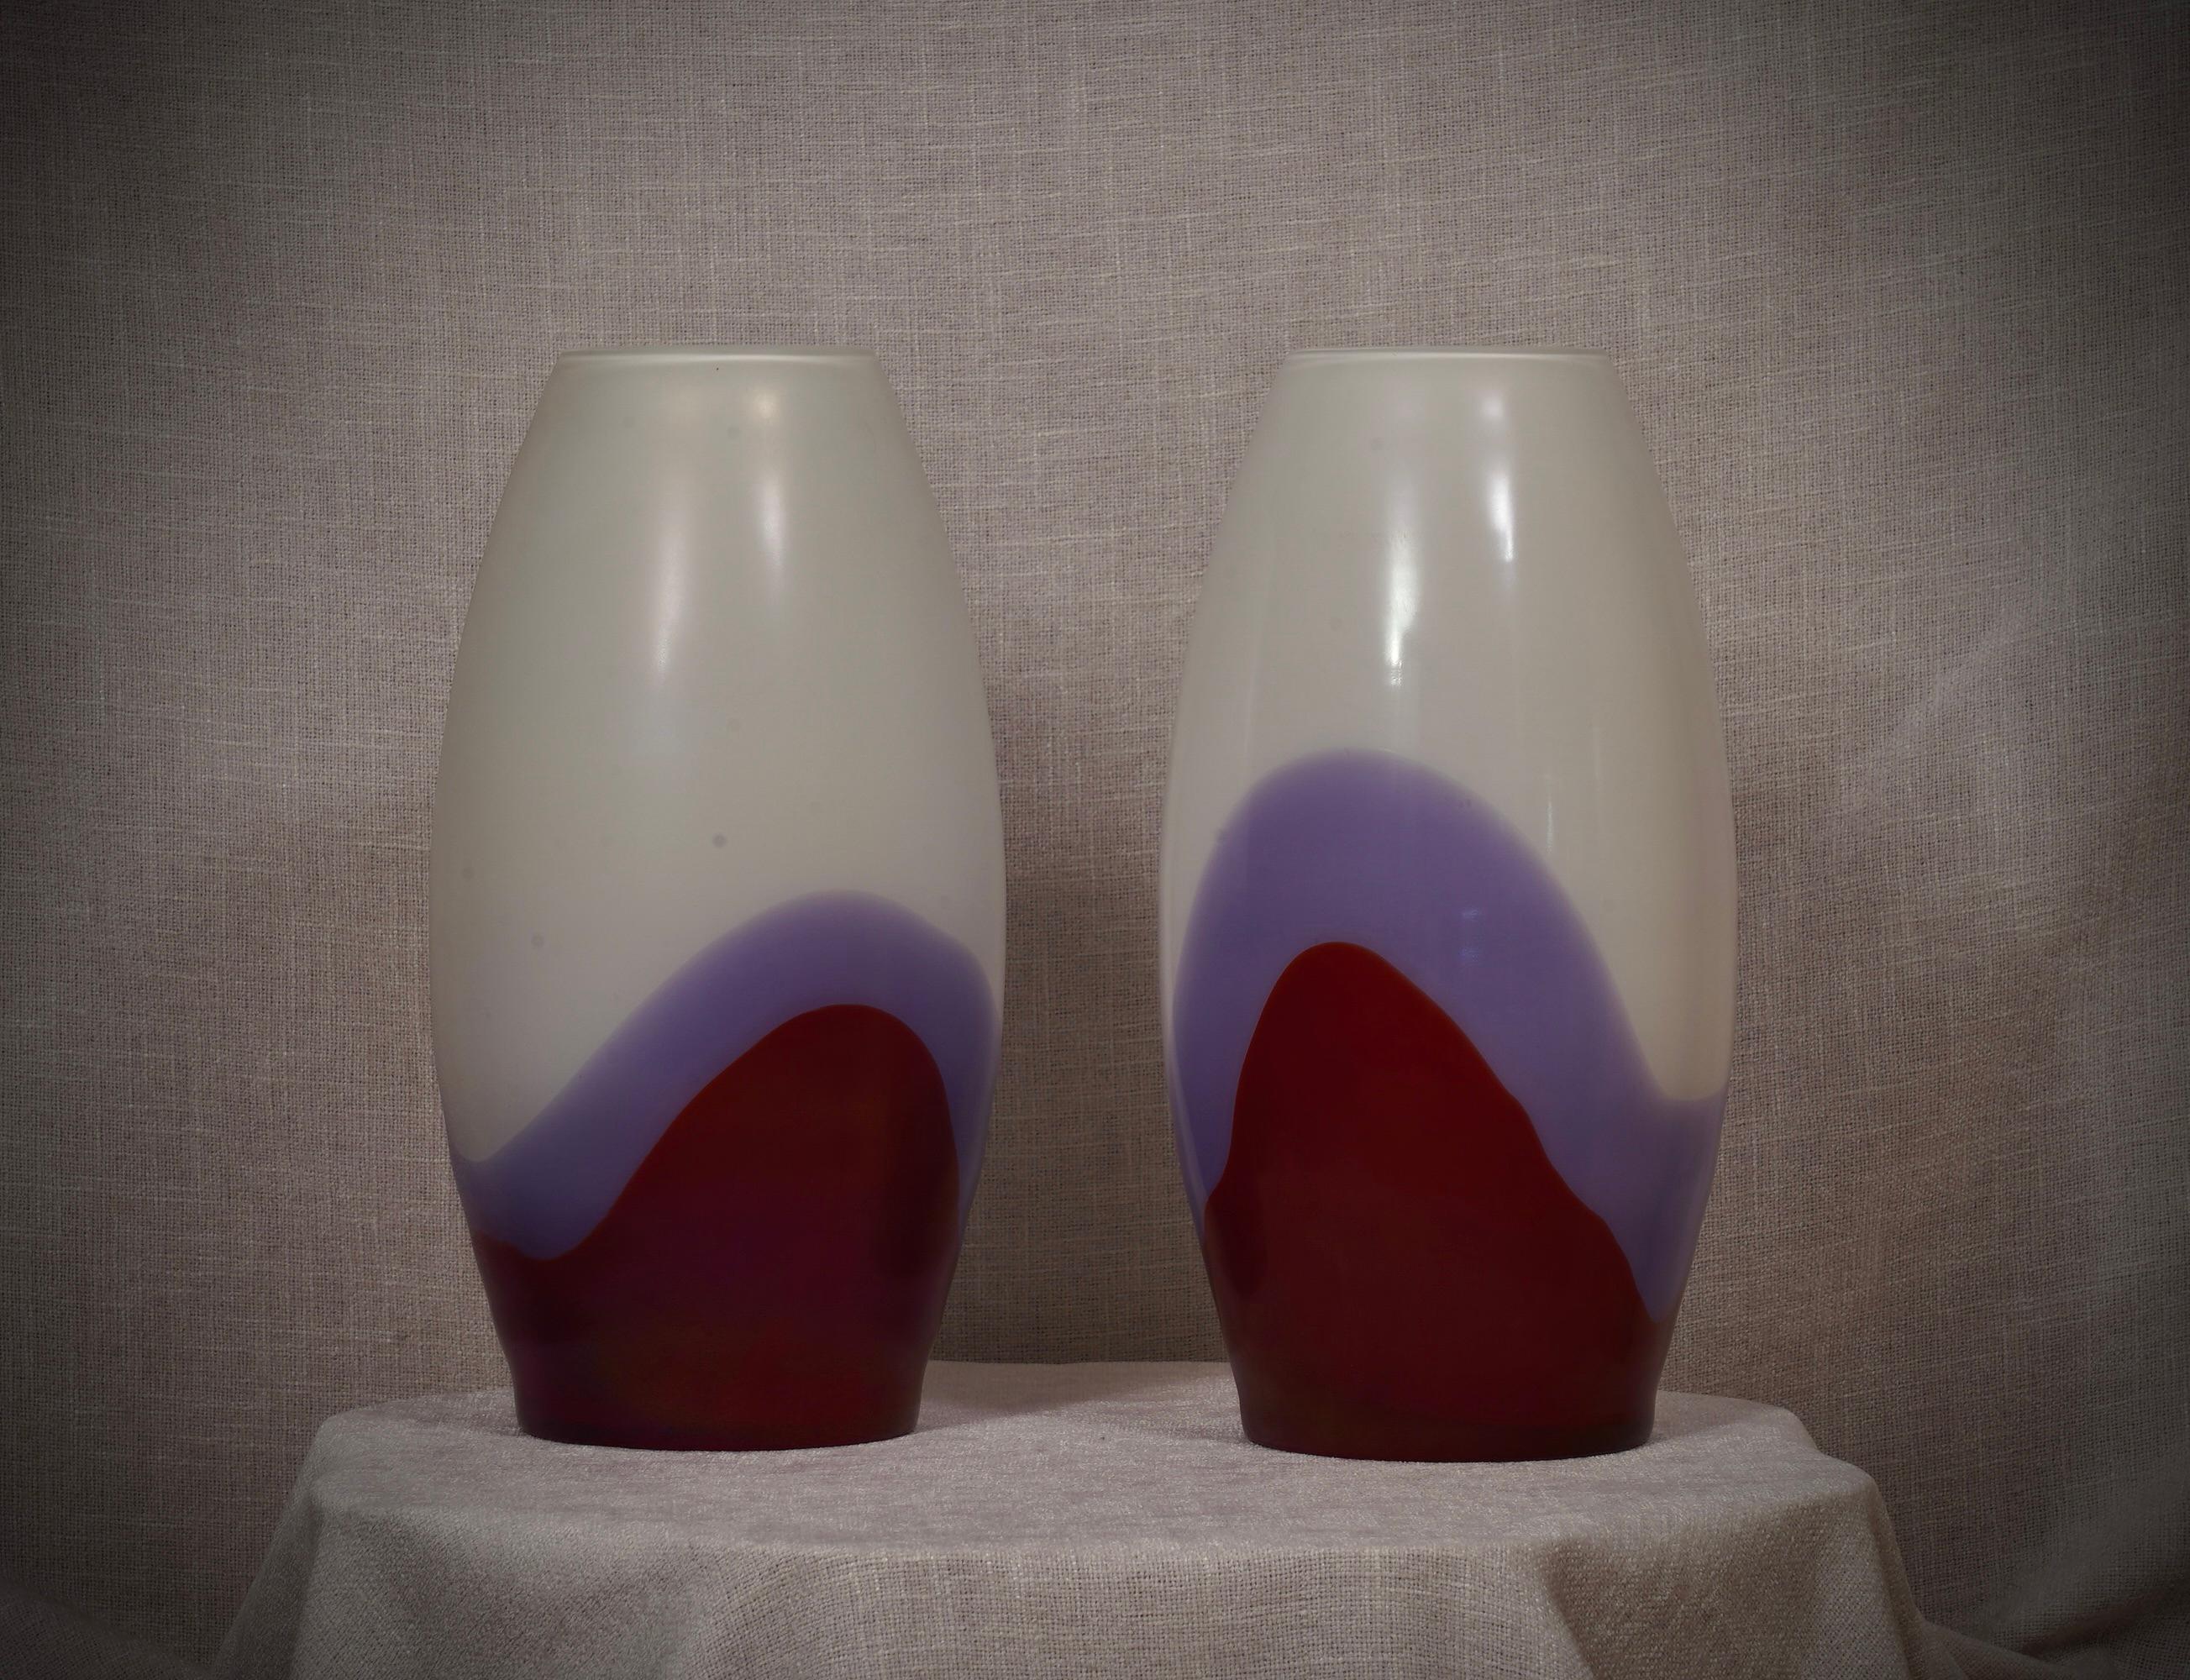 Fantastische Vase aus der Glashütte Murano, sowohl wegen ihrer besonderen Verarbeitung als auch wegen der Farbe, denn die Vase ist rot und violett und hat eine weiße Innenauskleidung, 